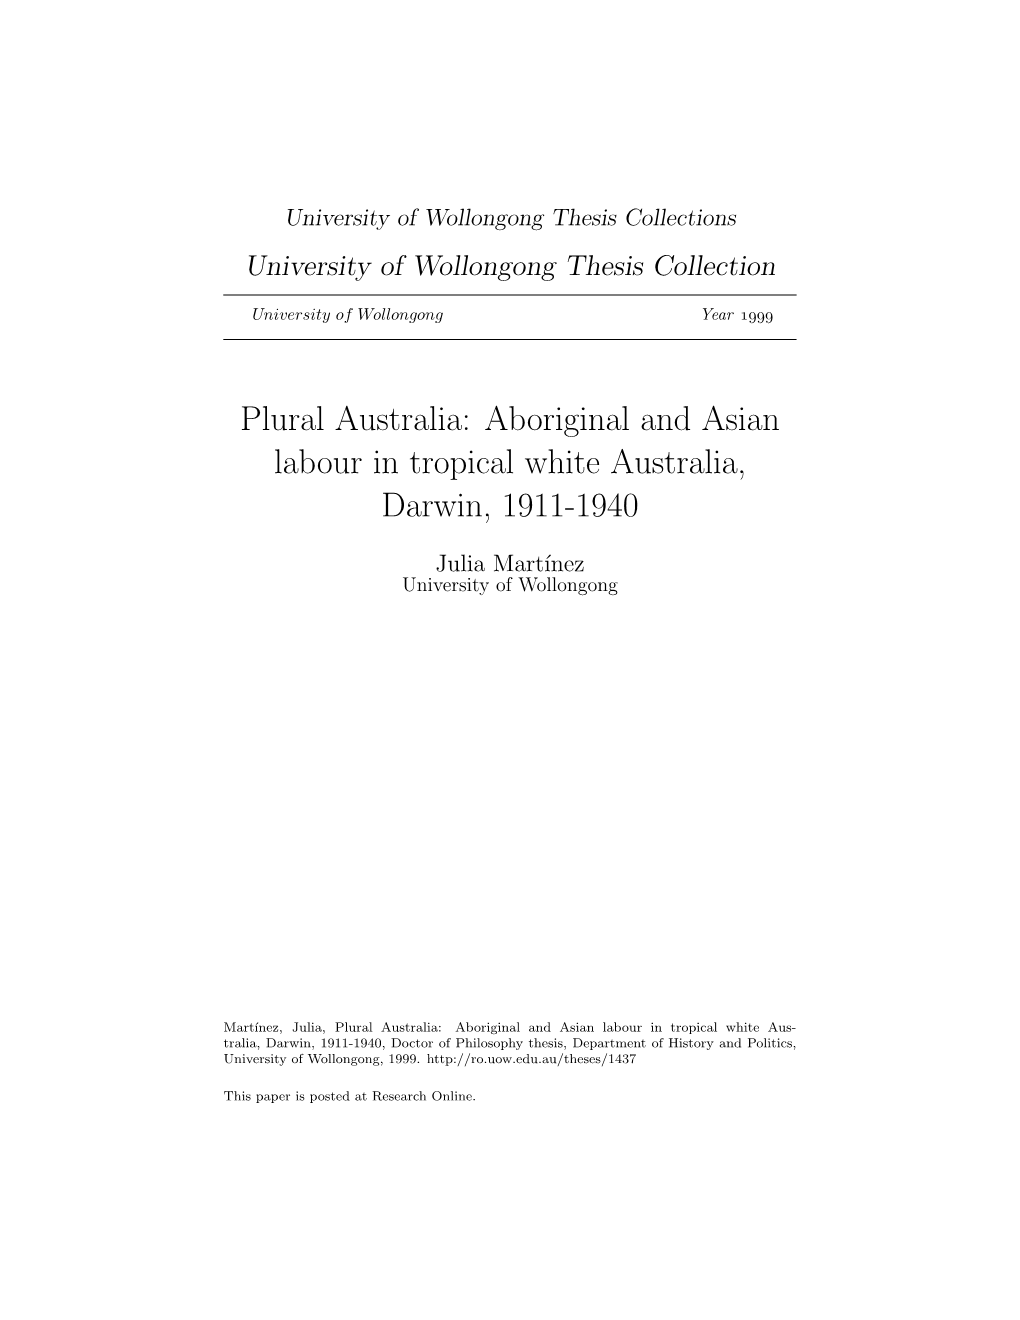 Aboriginal and Asian Labour in Tropical White Australia, Darwin, 1911-1940